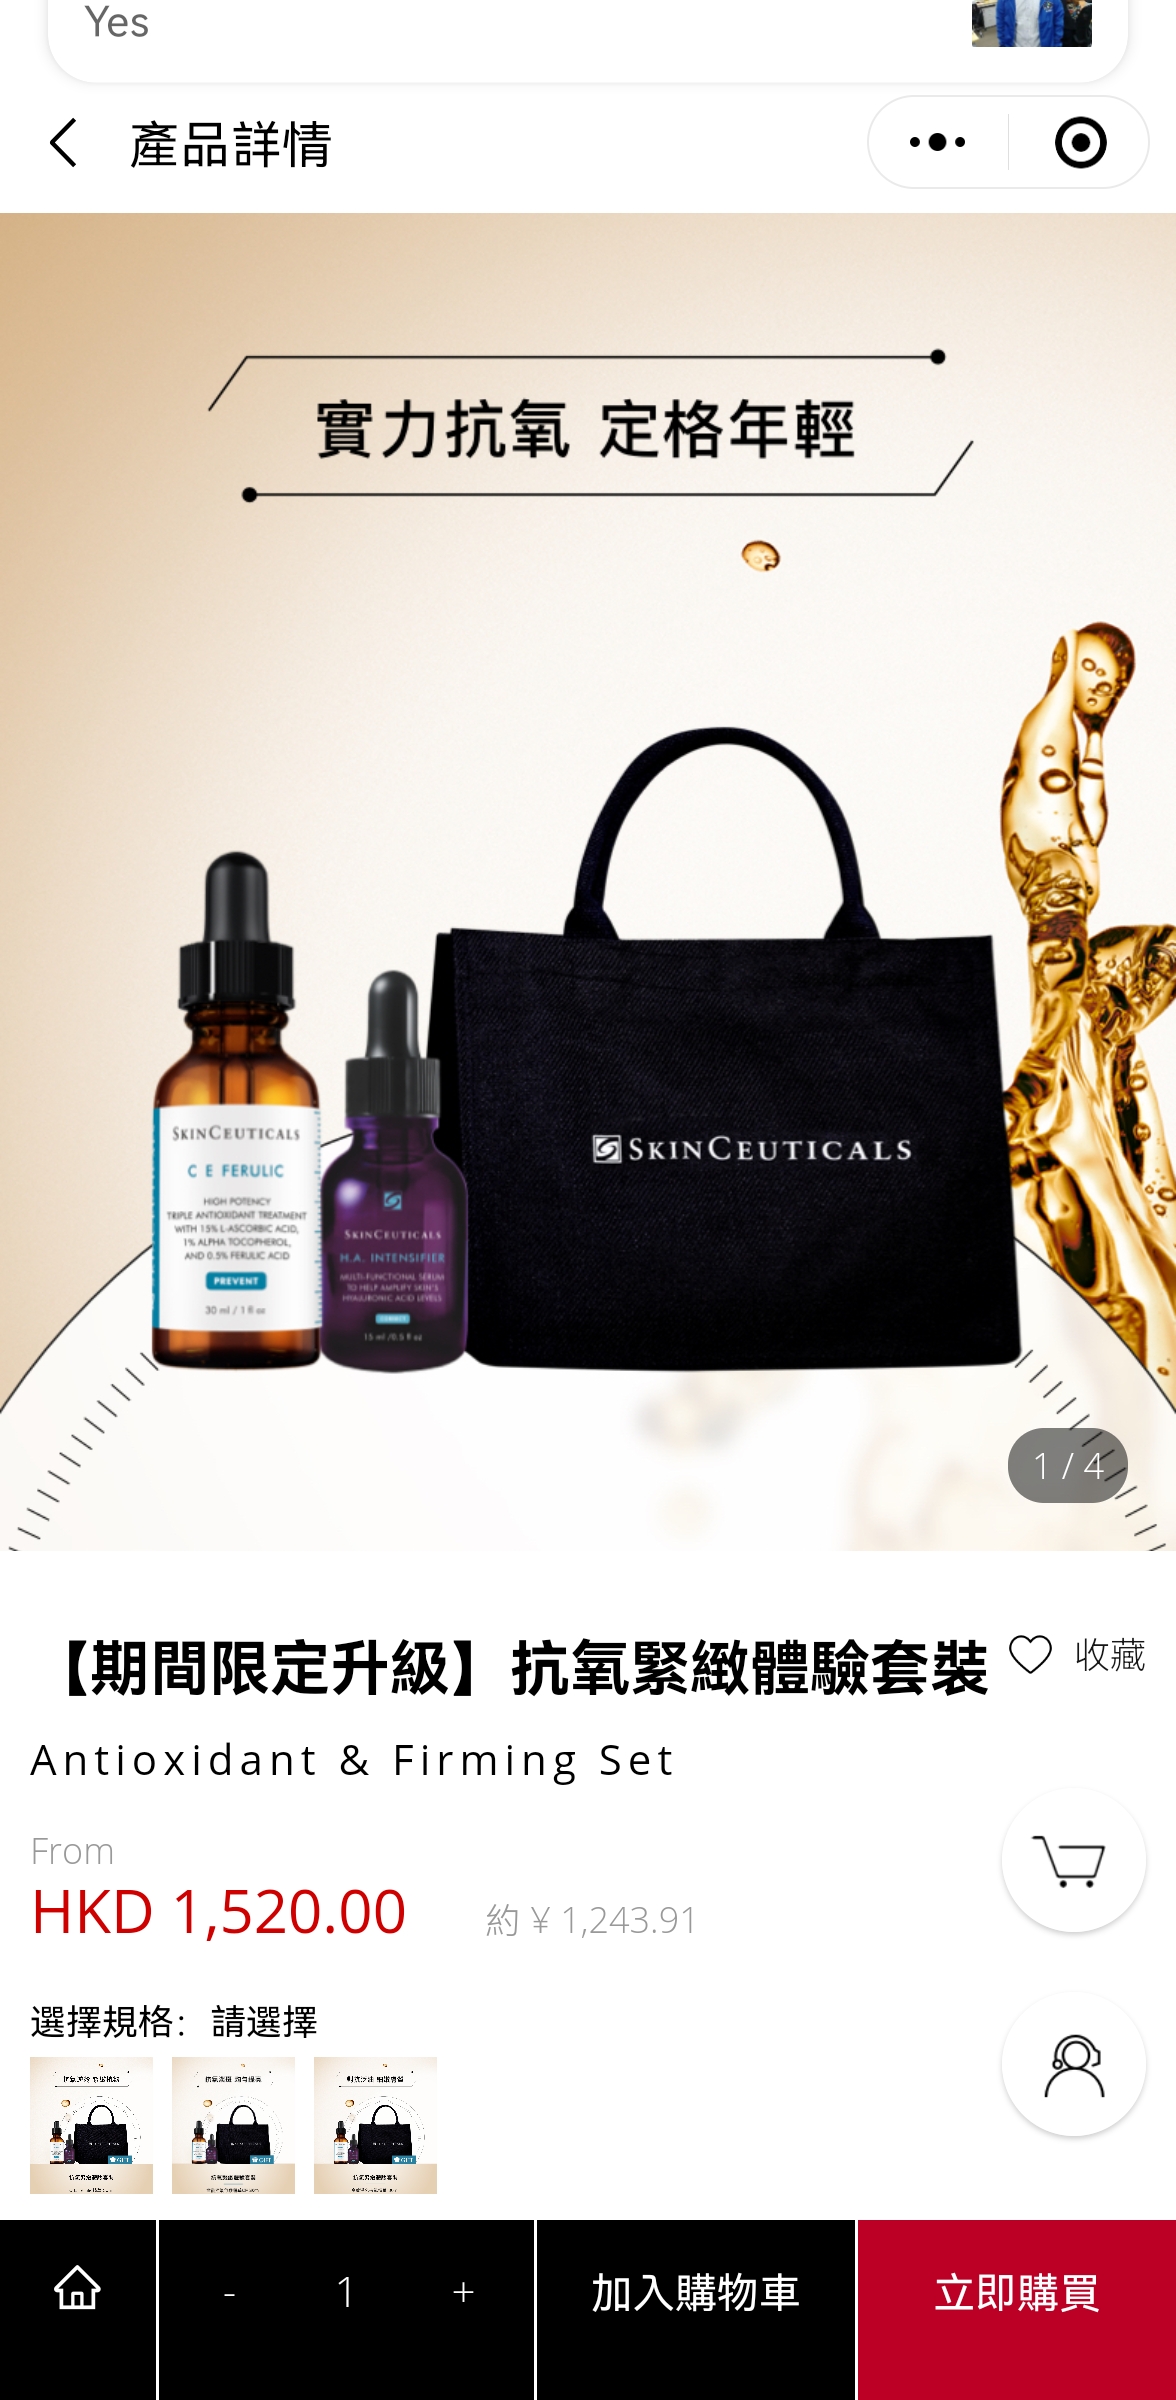 SkinCeuticals修麗可香港商城小程序